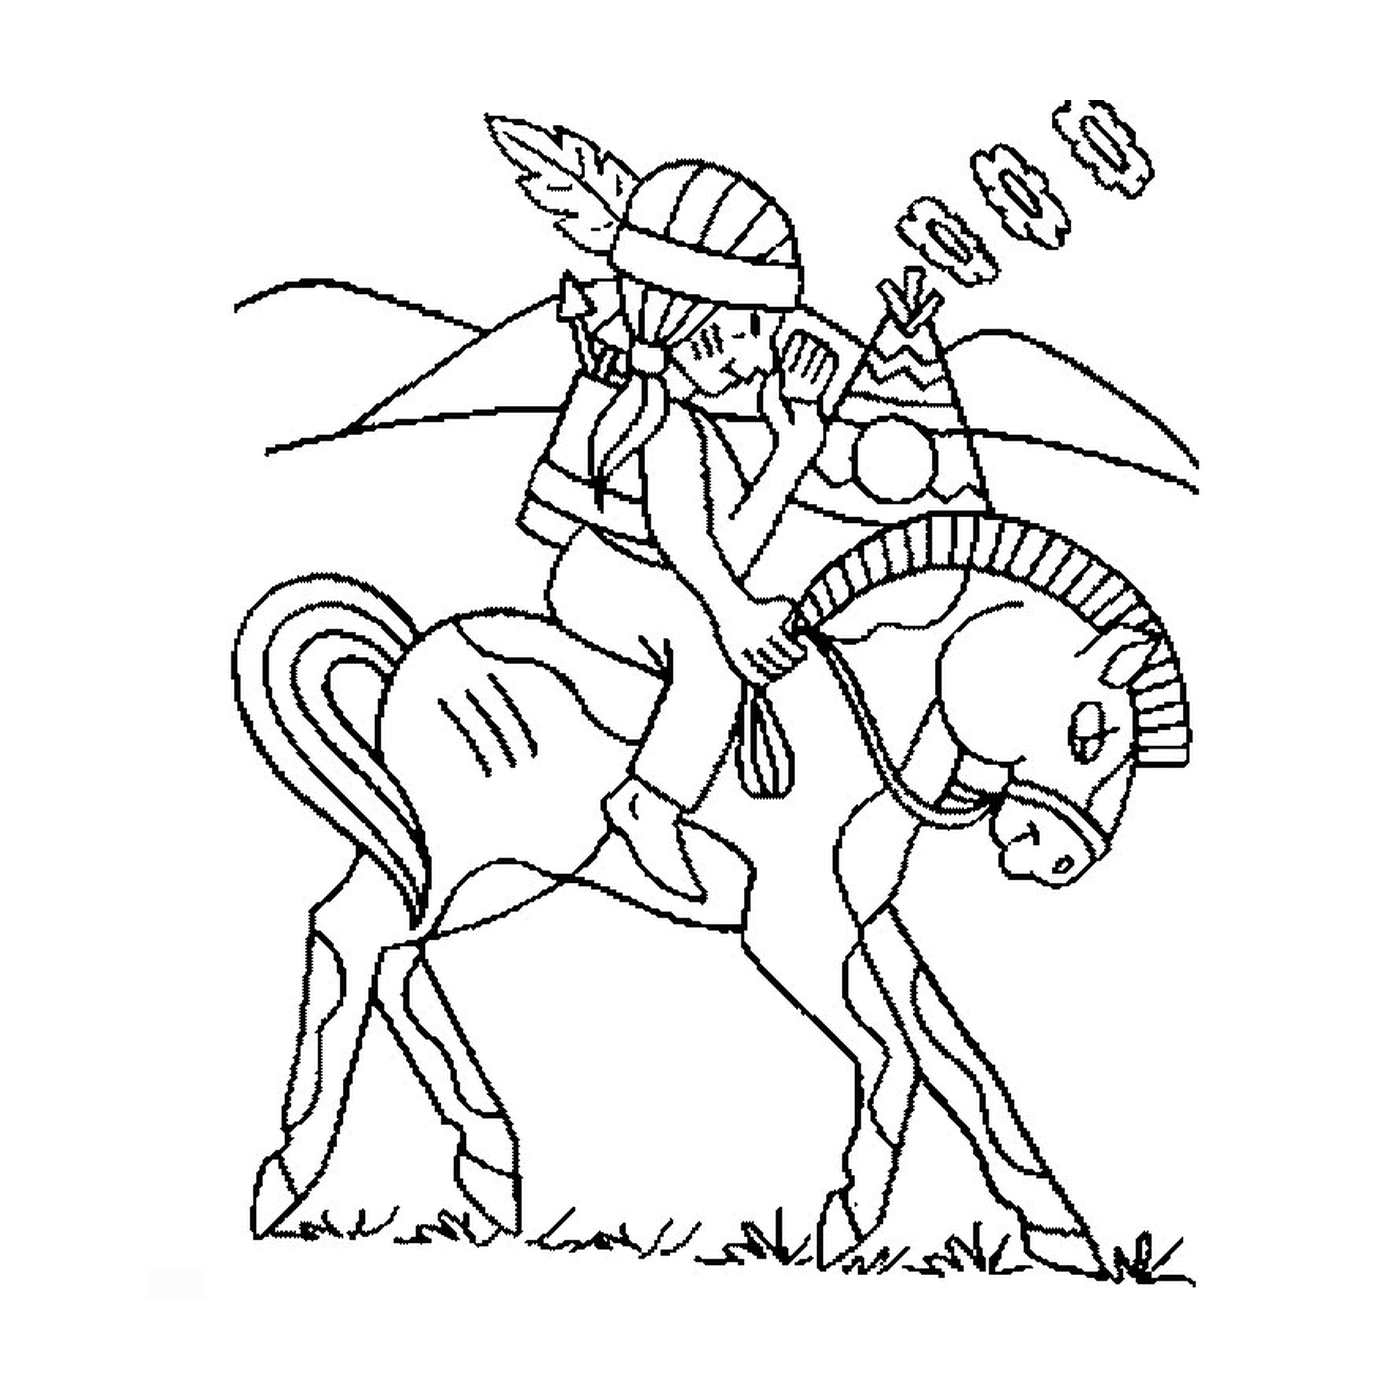  Persona montando un caballo como los indios 